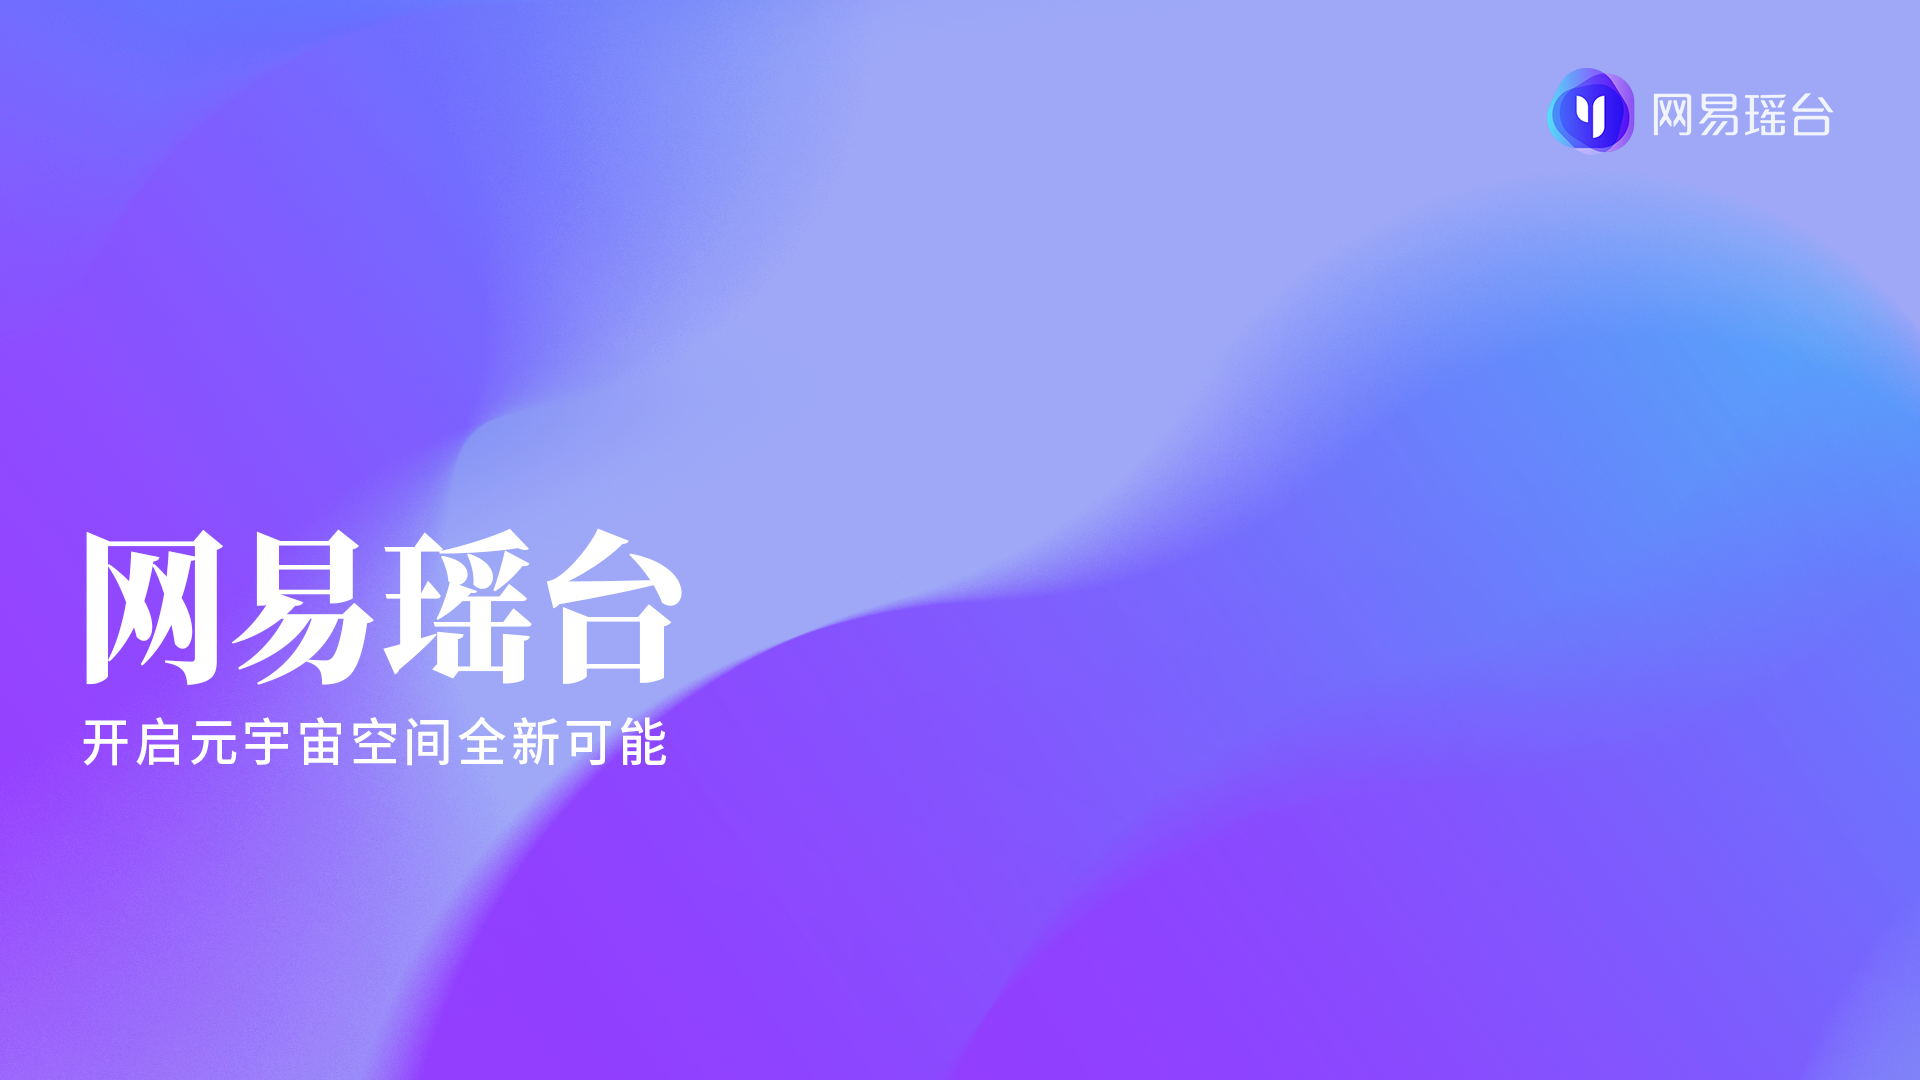 这是一张具有渐变紫色调的图形设计图片，上面有白色中文文字“网易云音乐，开启音乐梦想新篇章”，旁边有网易云音乐的标志。